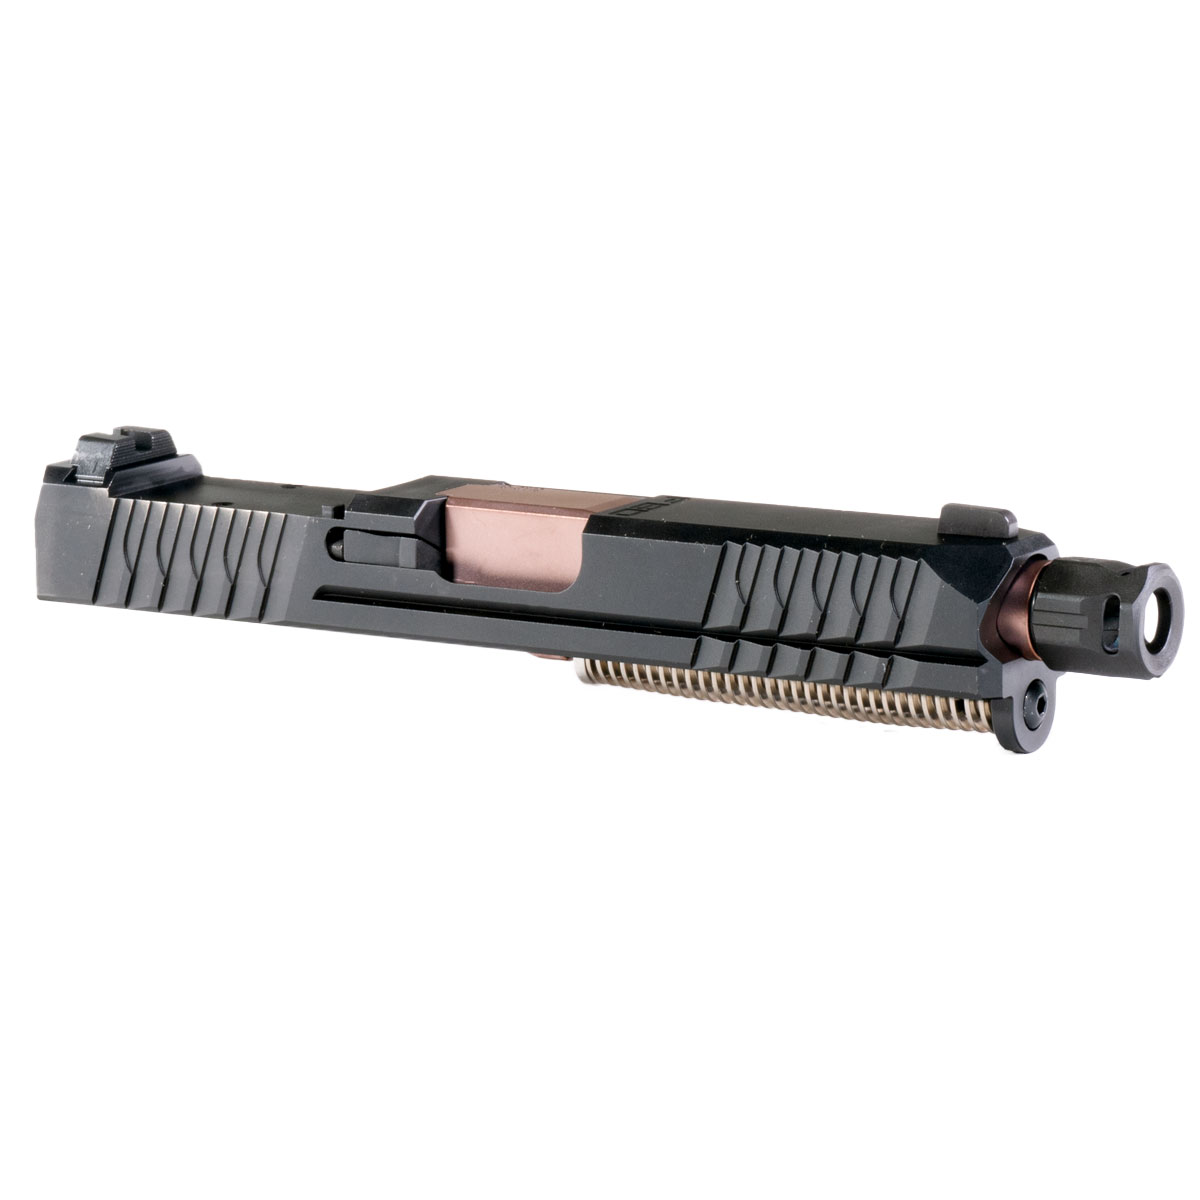 DD 'Mach Charger' 9mm Complete Slide Kit - Glock 19 Gen 1-3 Compatible